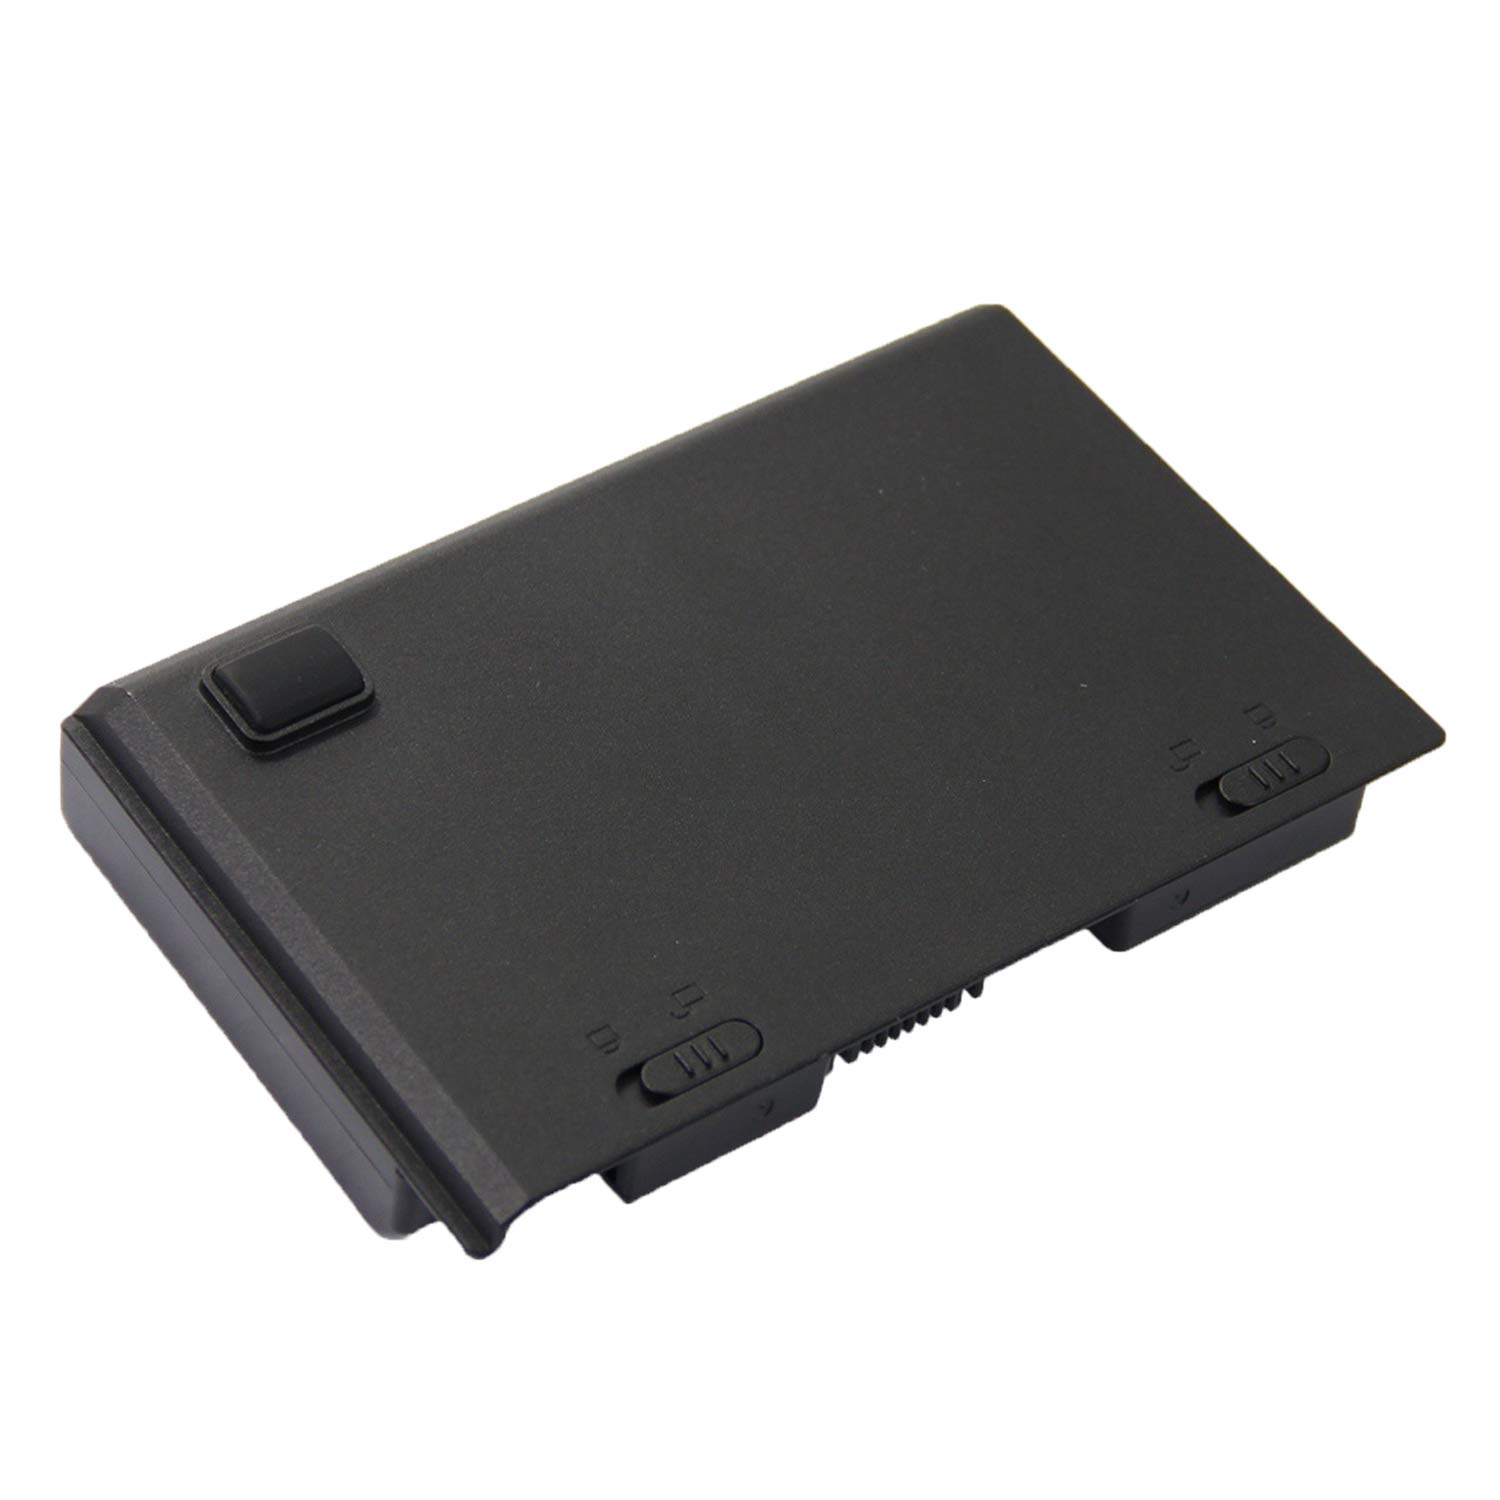 clevo 6-87-x710s-4j7 laptop battery